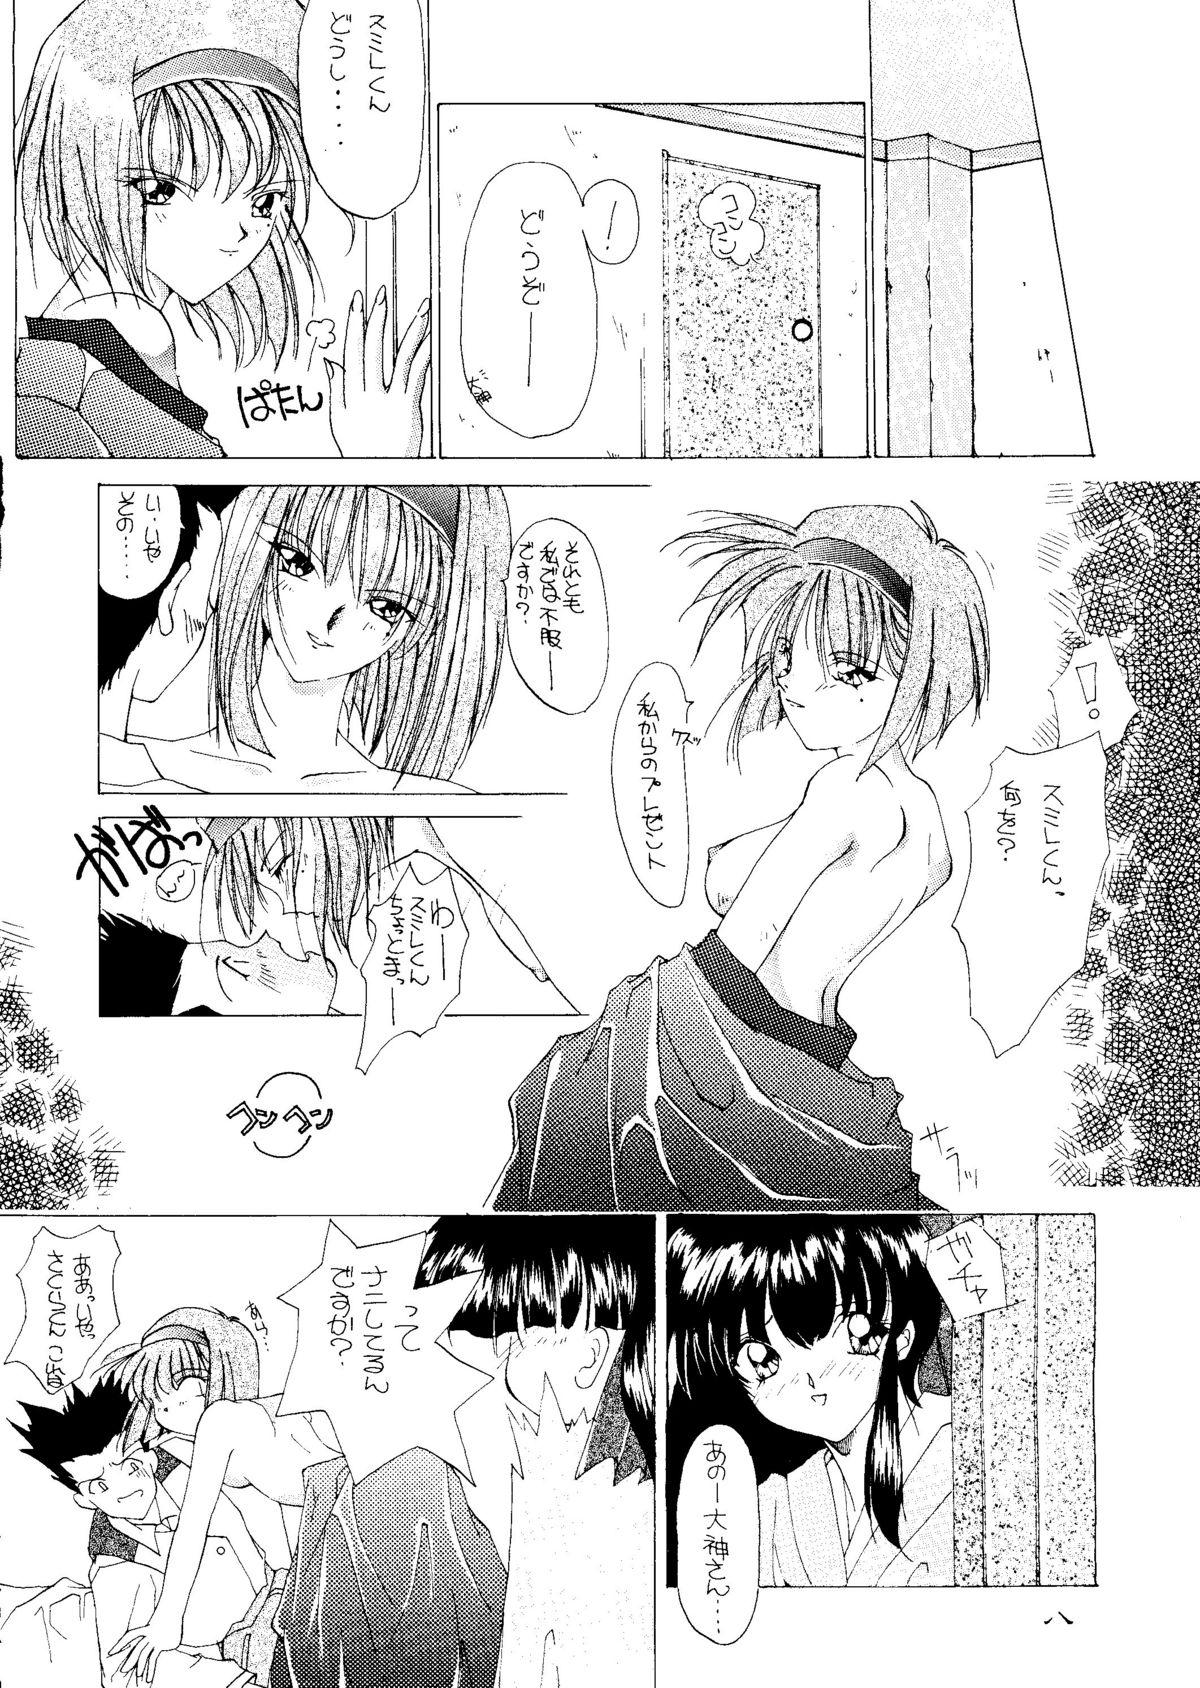 Mistress Geki - Sakura taisen Art - Page 7